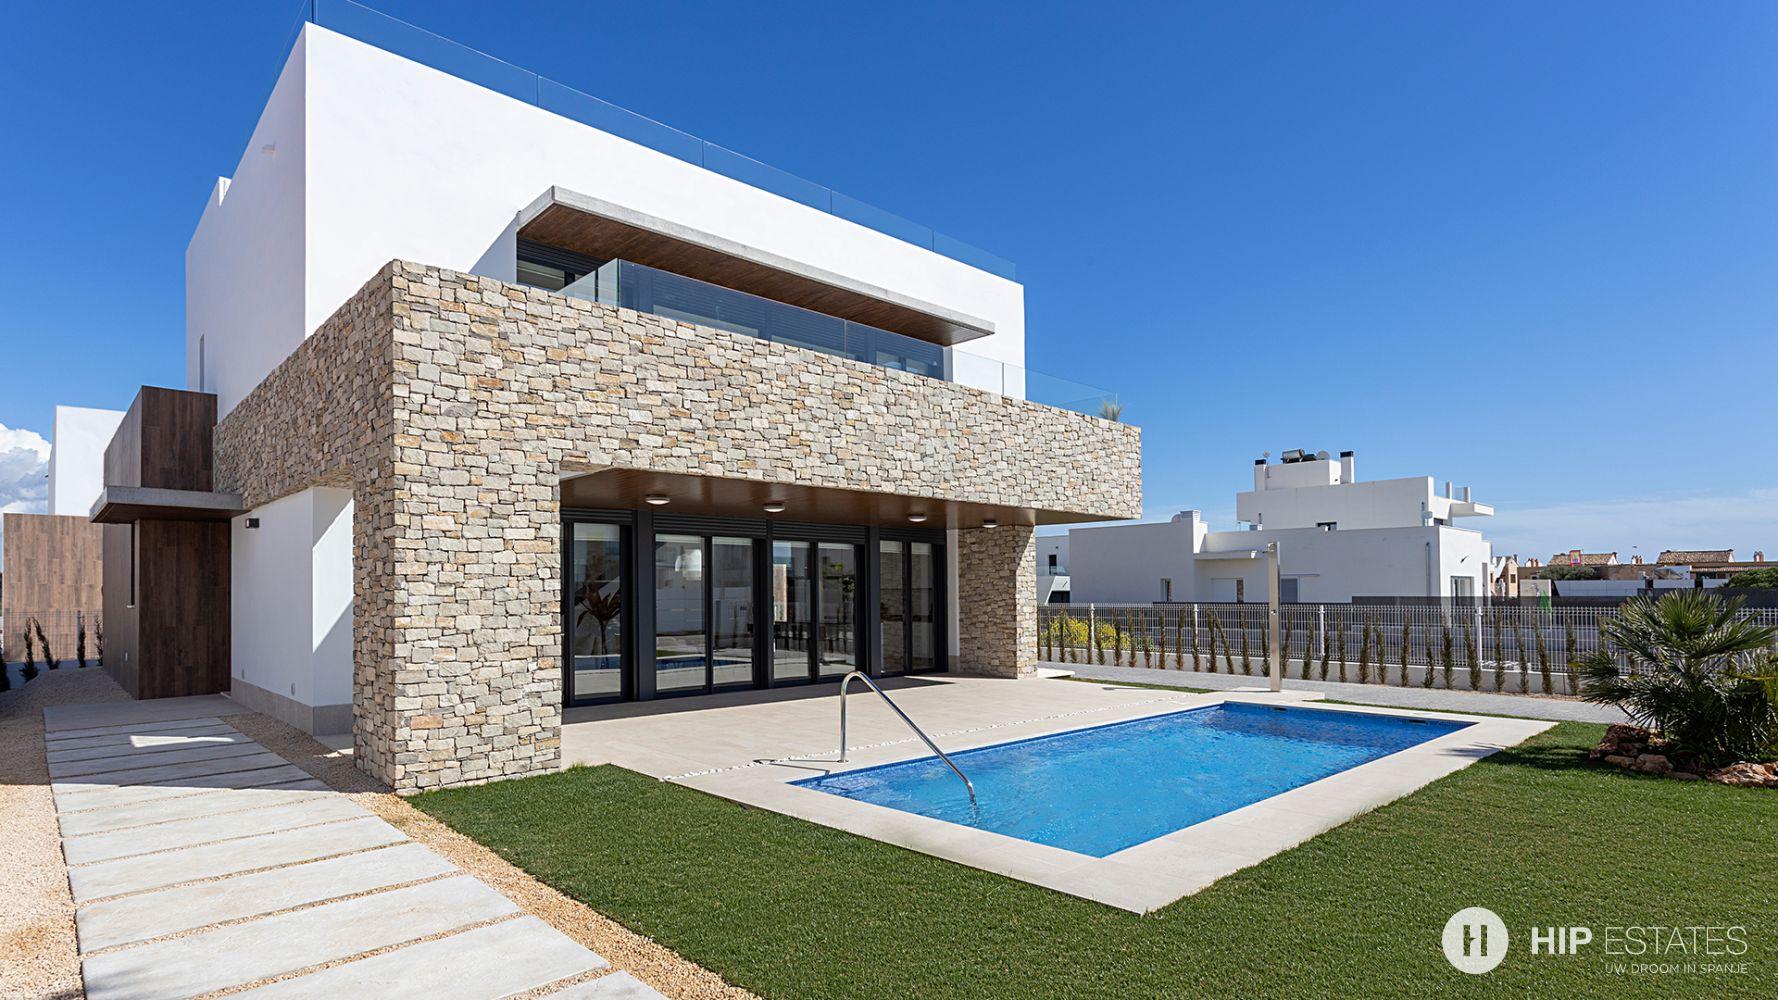 Moderne villa's met privé zwembad in Mallorca HIP Estates | Tweede verblijf in Spanje, huis kopen, appartement kopen